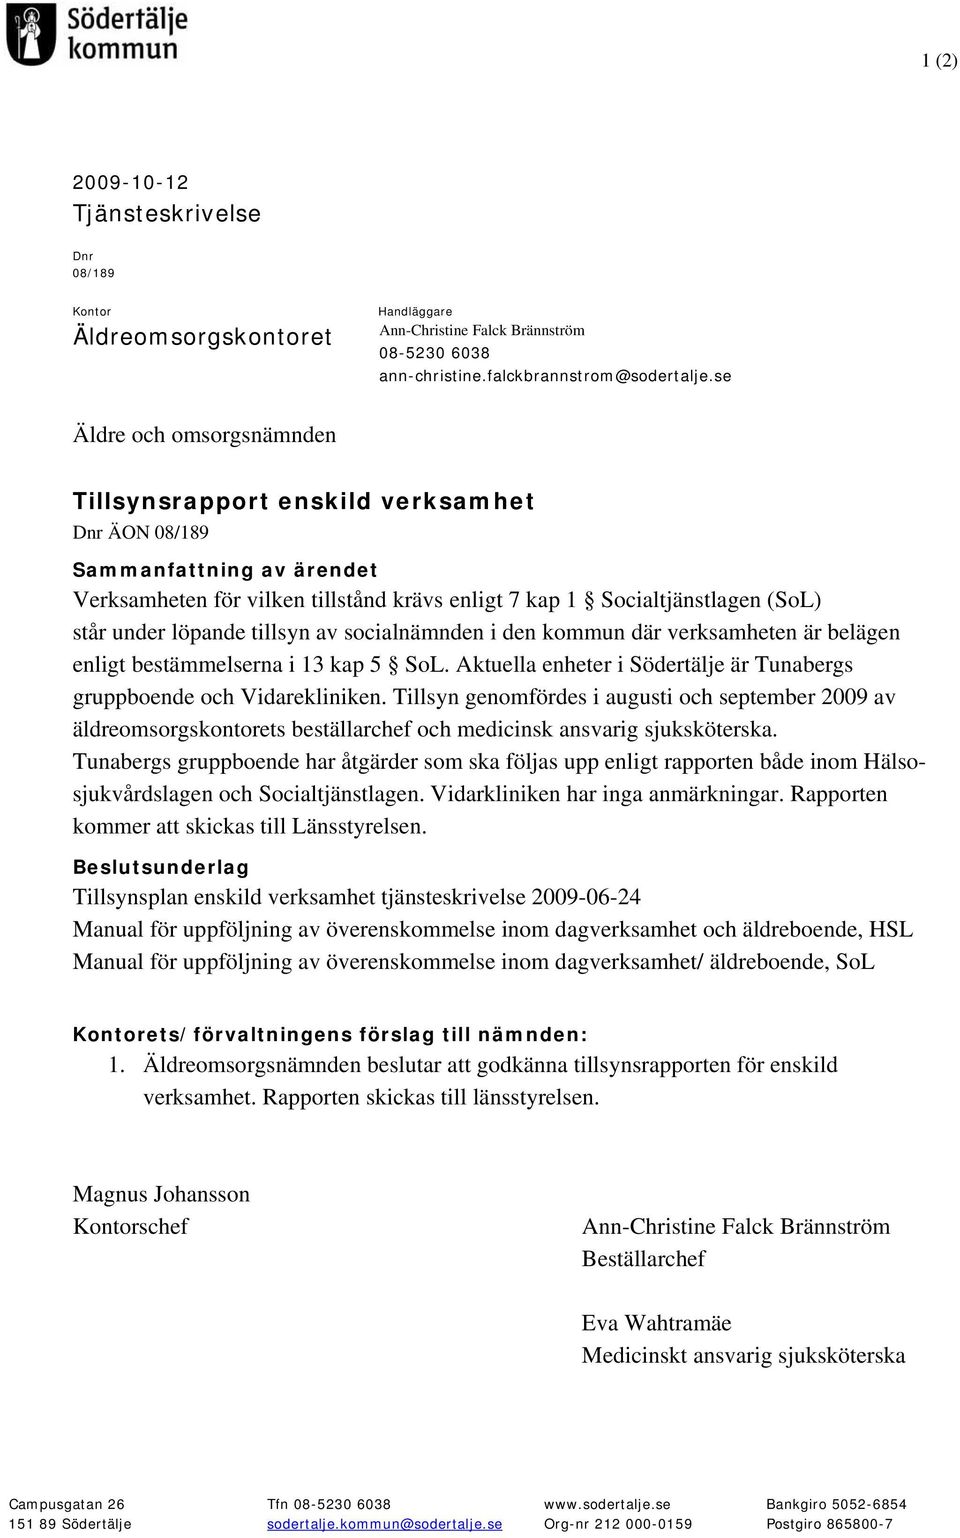 löpande tillsyn av socialnämnden i den kommun där verksamheten är belägen enligt bestämmelserna i 13 kap 5 SoL. Aktuella enheter i Södertälje är Tunabergs gruppboende och Vidarekliniken.